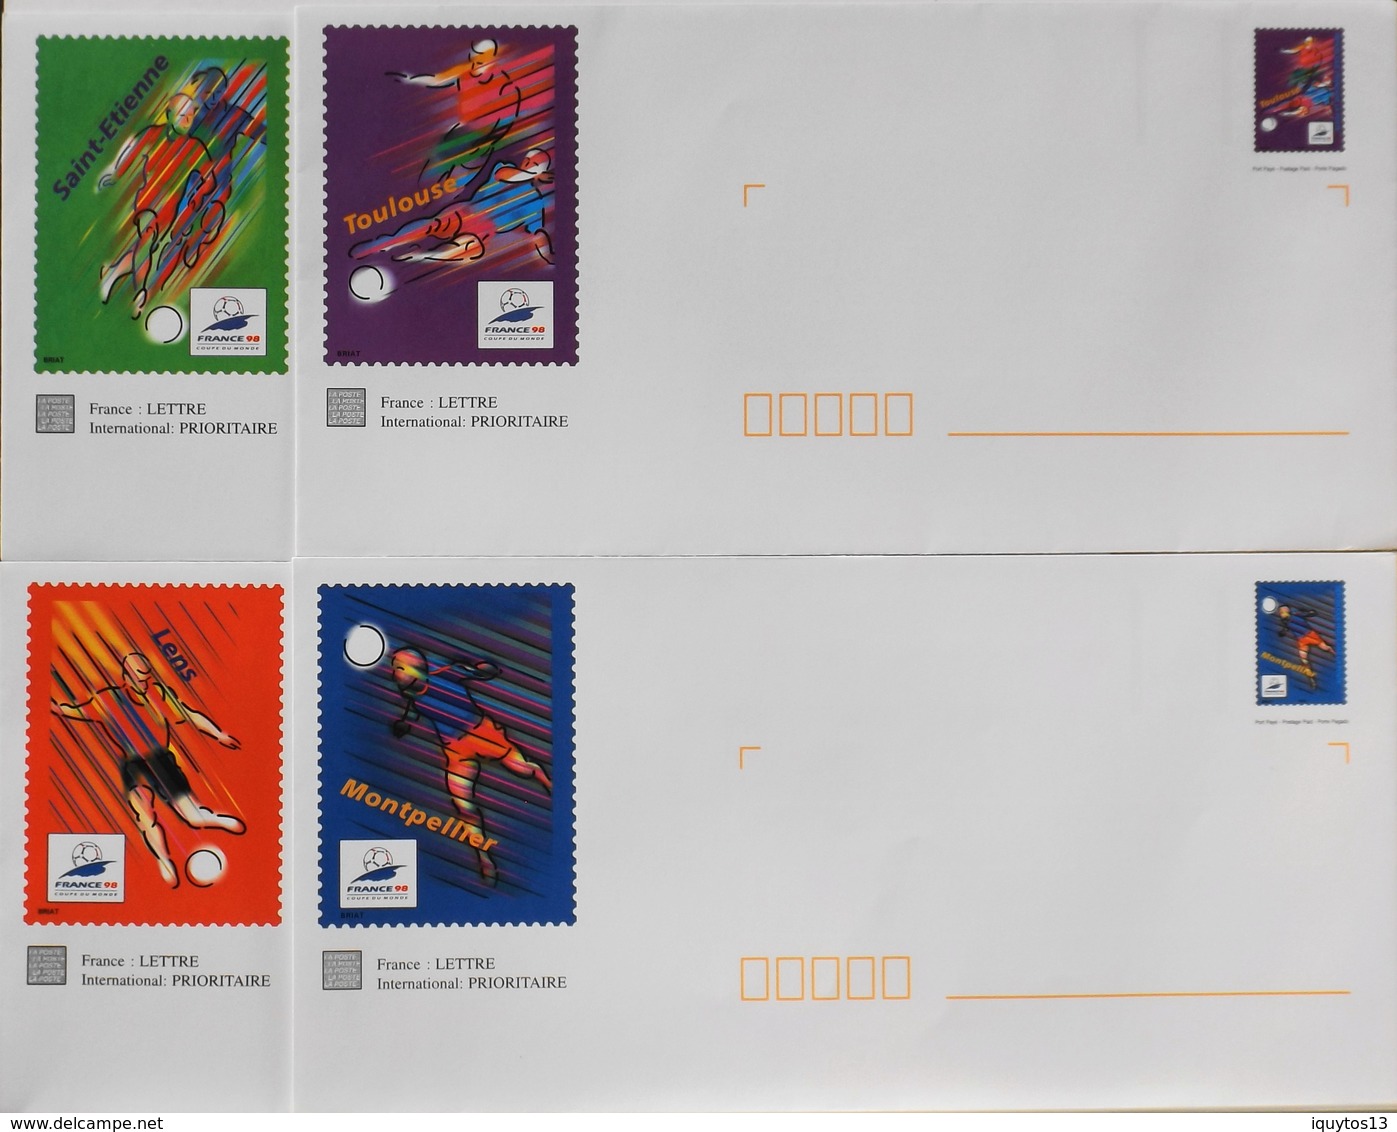 4 Enveloppes Illustrées Prêts-à-poster France 98 N° 3010 à 3013 - Envoi Lettre Prioritaire 20gr Validité Monde Entier - PAP: Sonstige (1995-...)